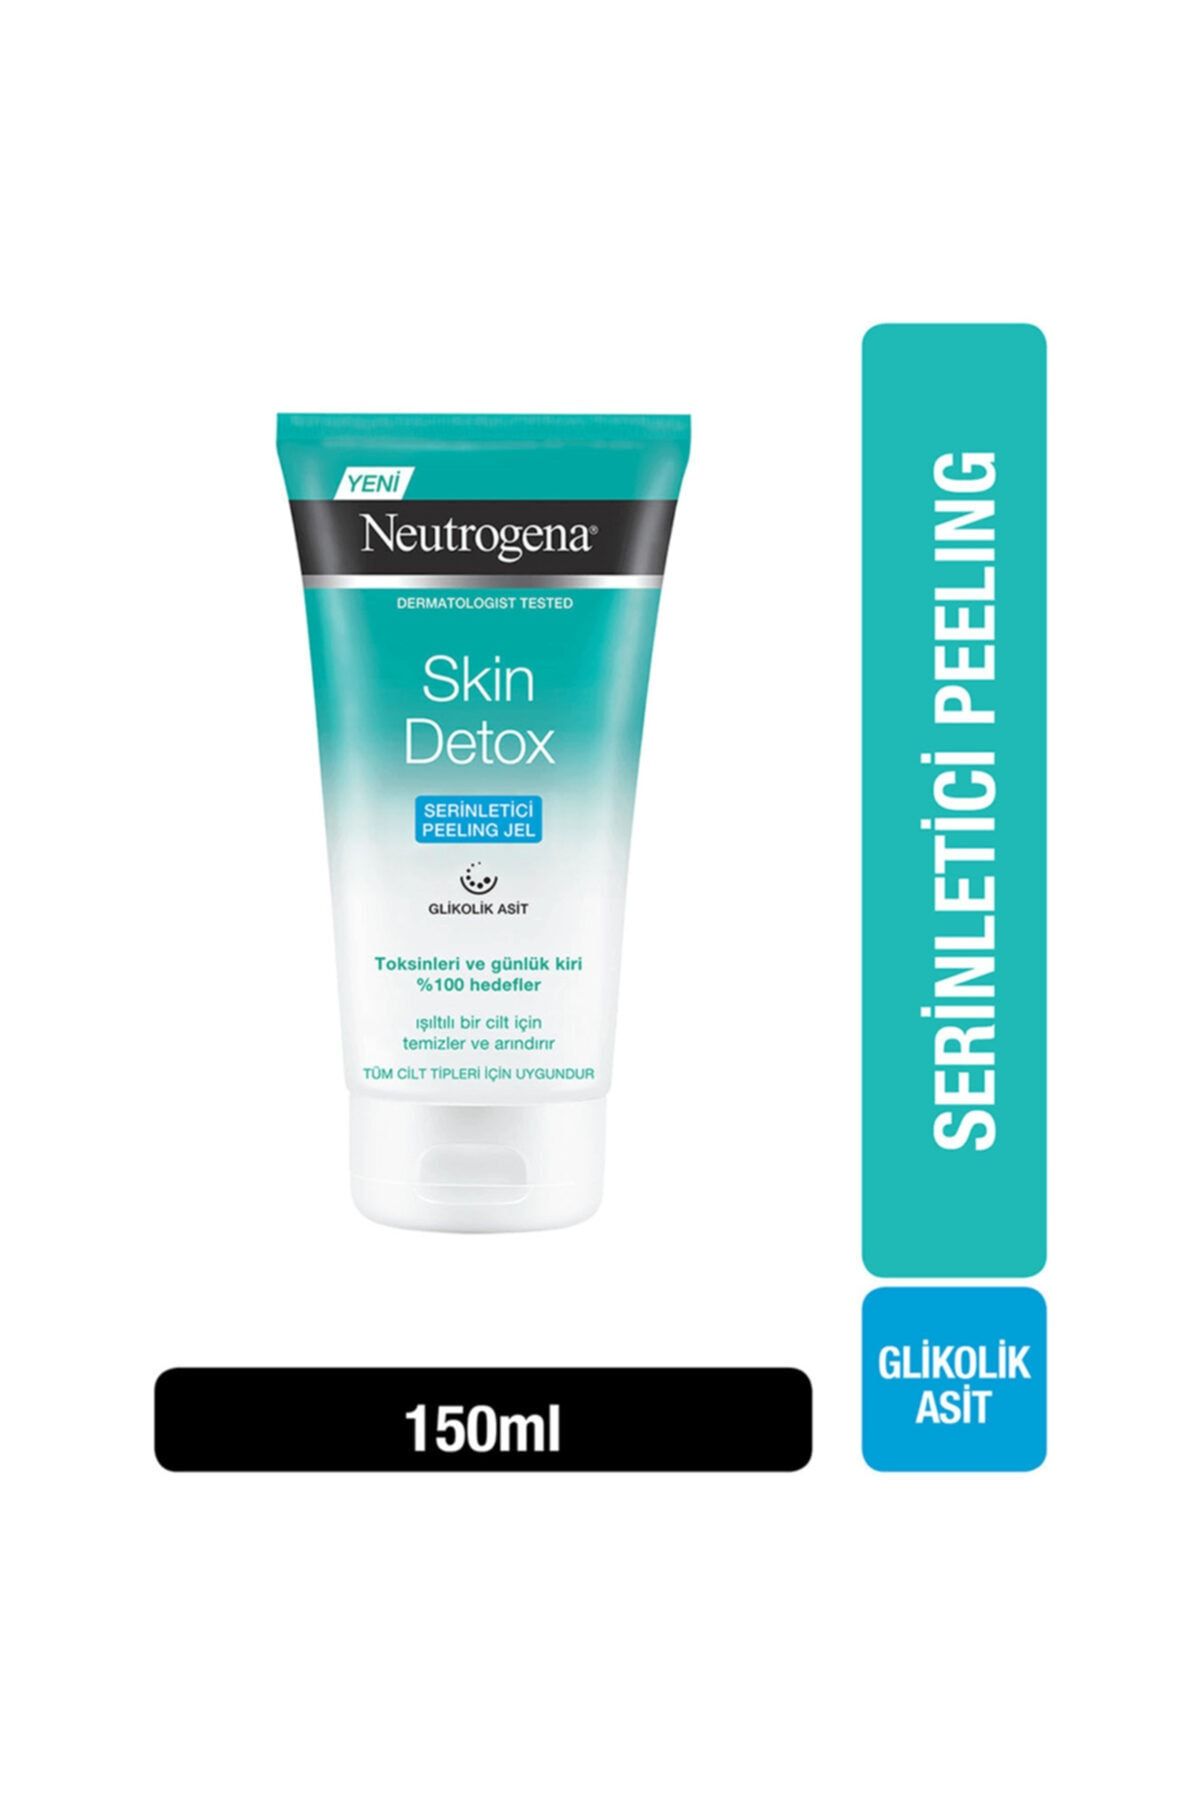 Neutrogena Skin Detox Serinletici Peeling Jel Serinletici 150 Ml